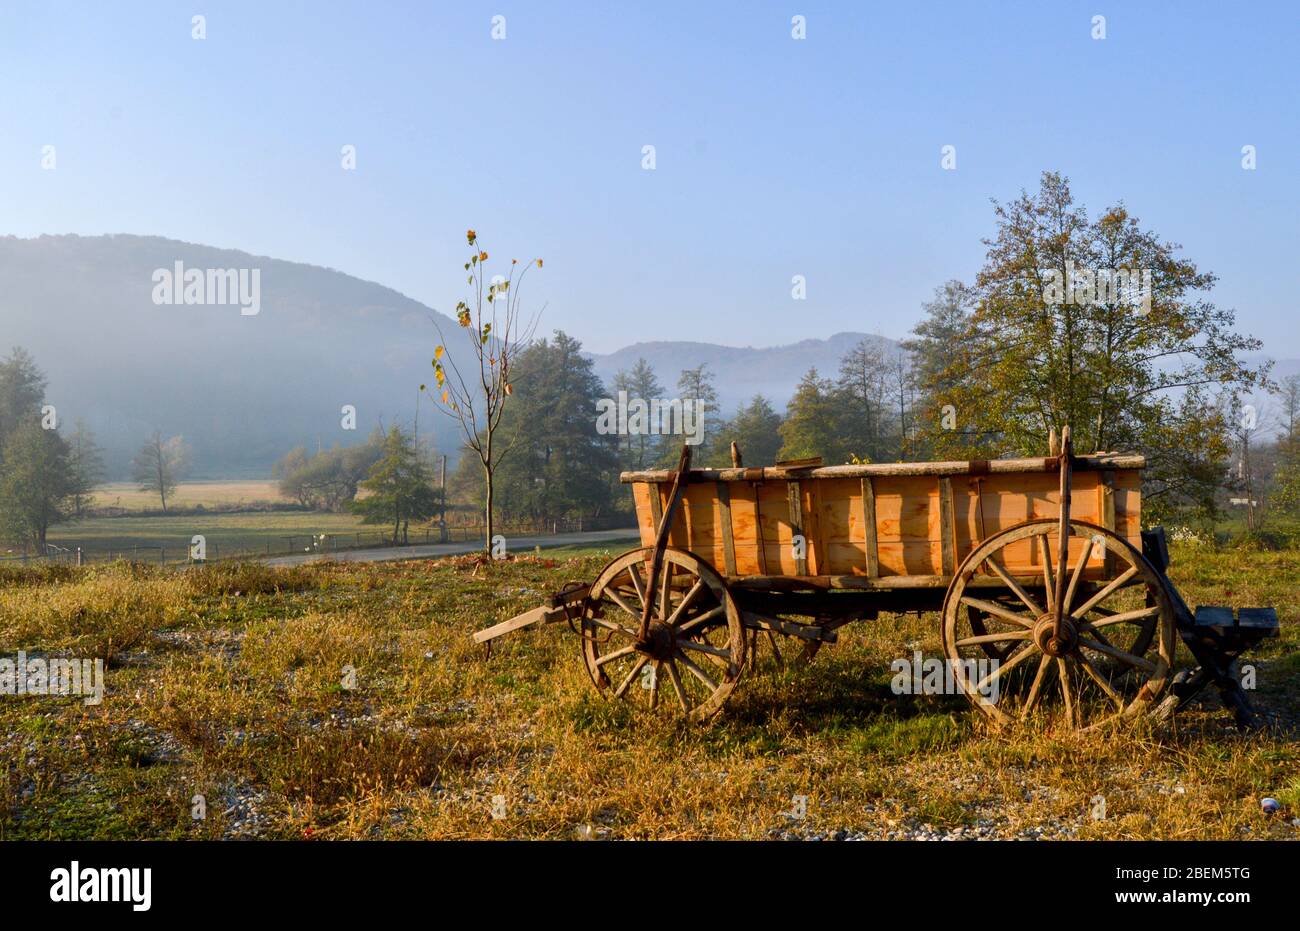 Paysage rural, quelque part dans les montagnes avec lumière chaude de lever de soleil sur un champ avec herbe et arbres, une vieille charrette en bois avec roues anciennes, rustique Banque D'Images